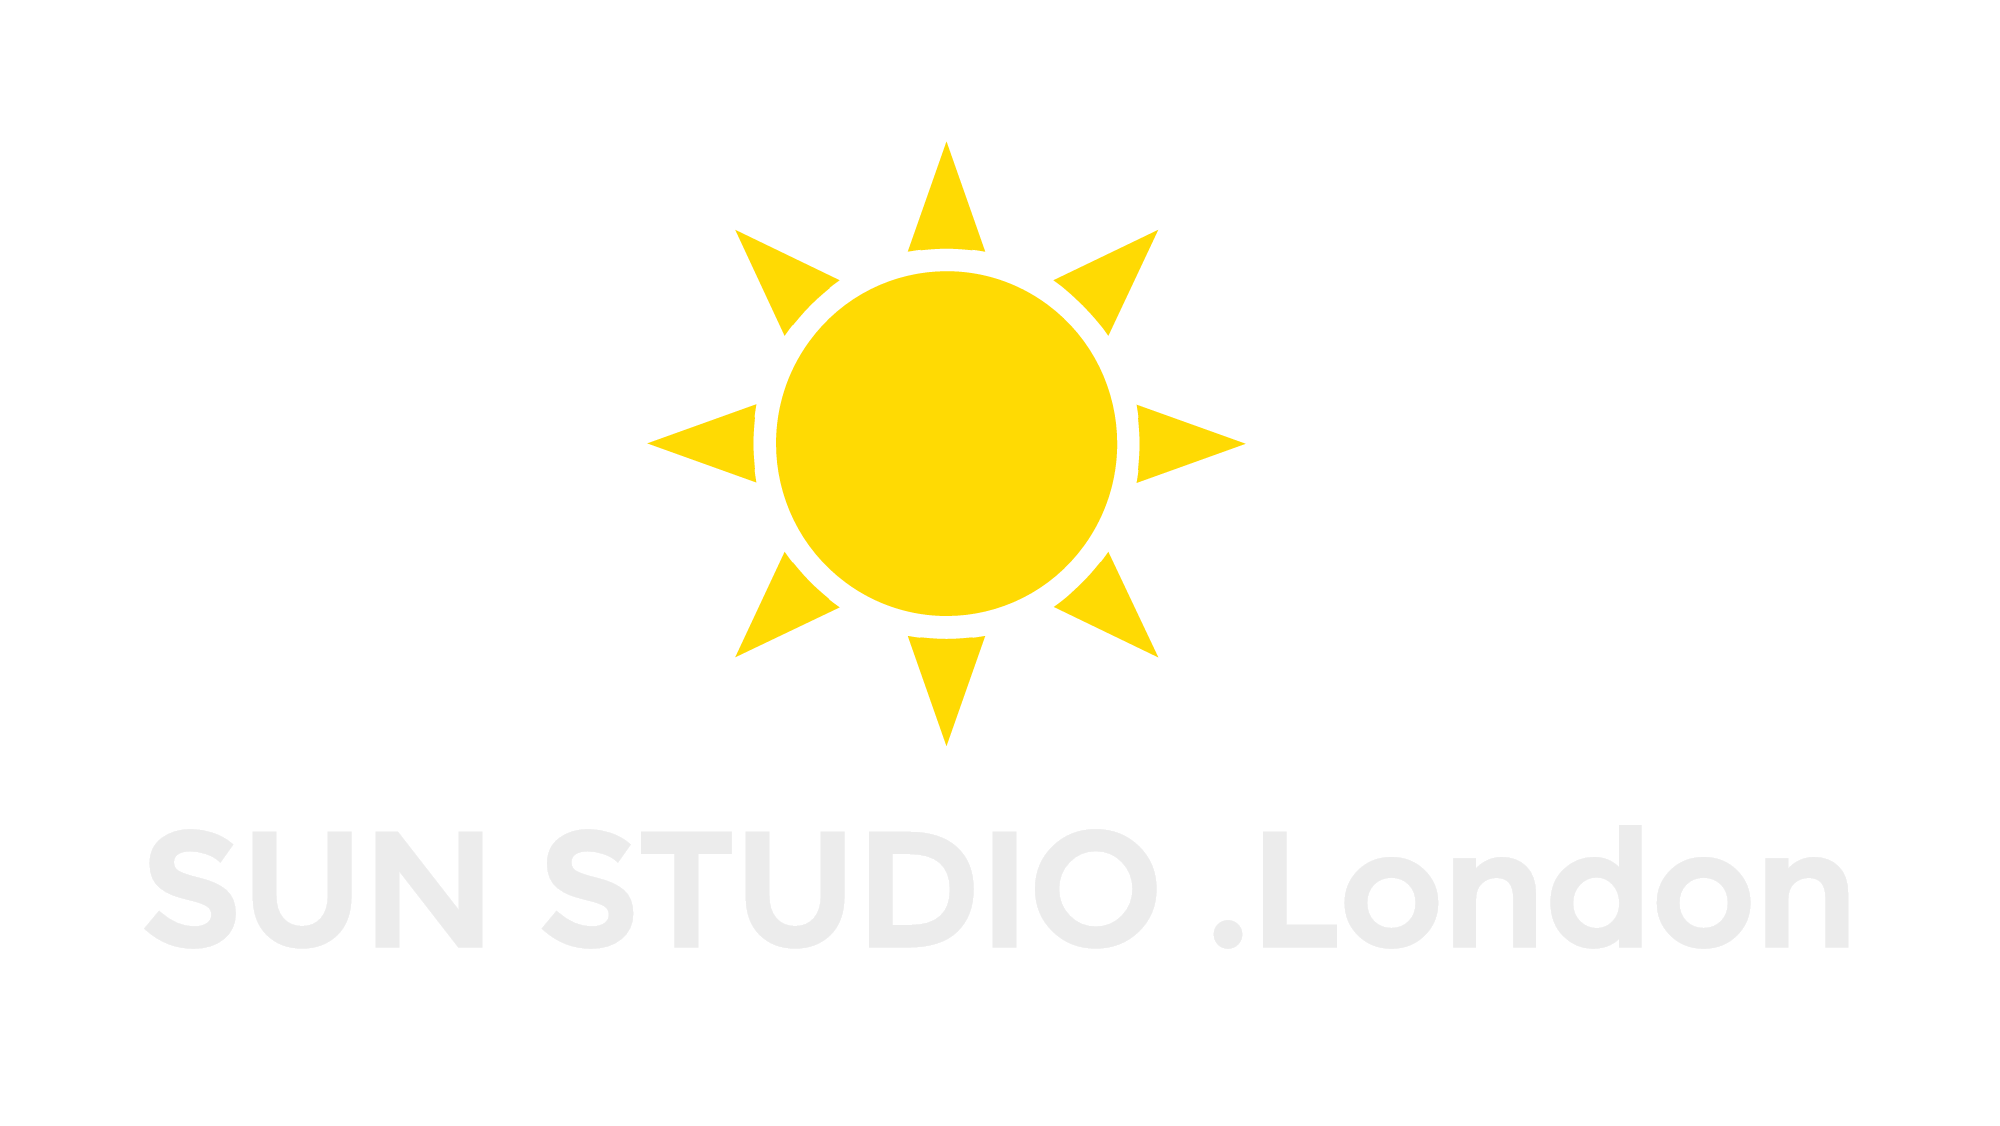 SUN STUDIO .London